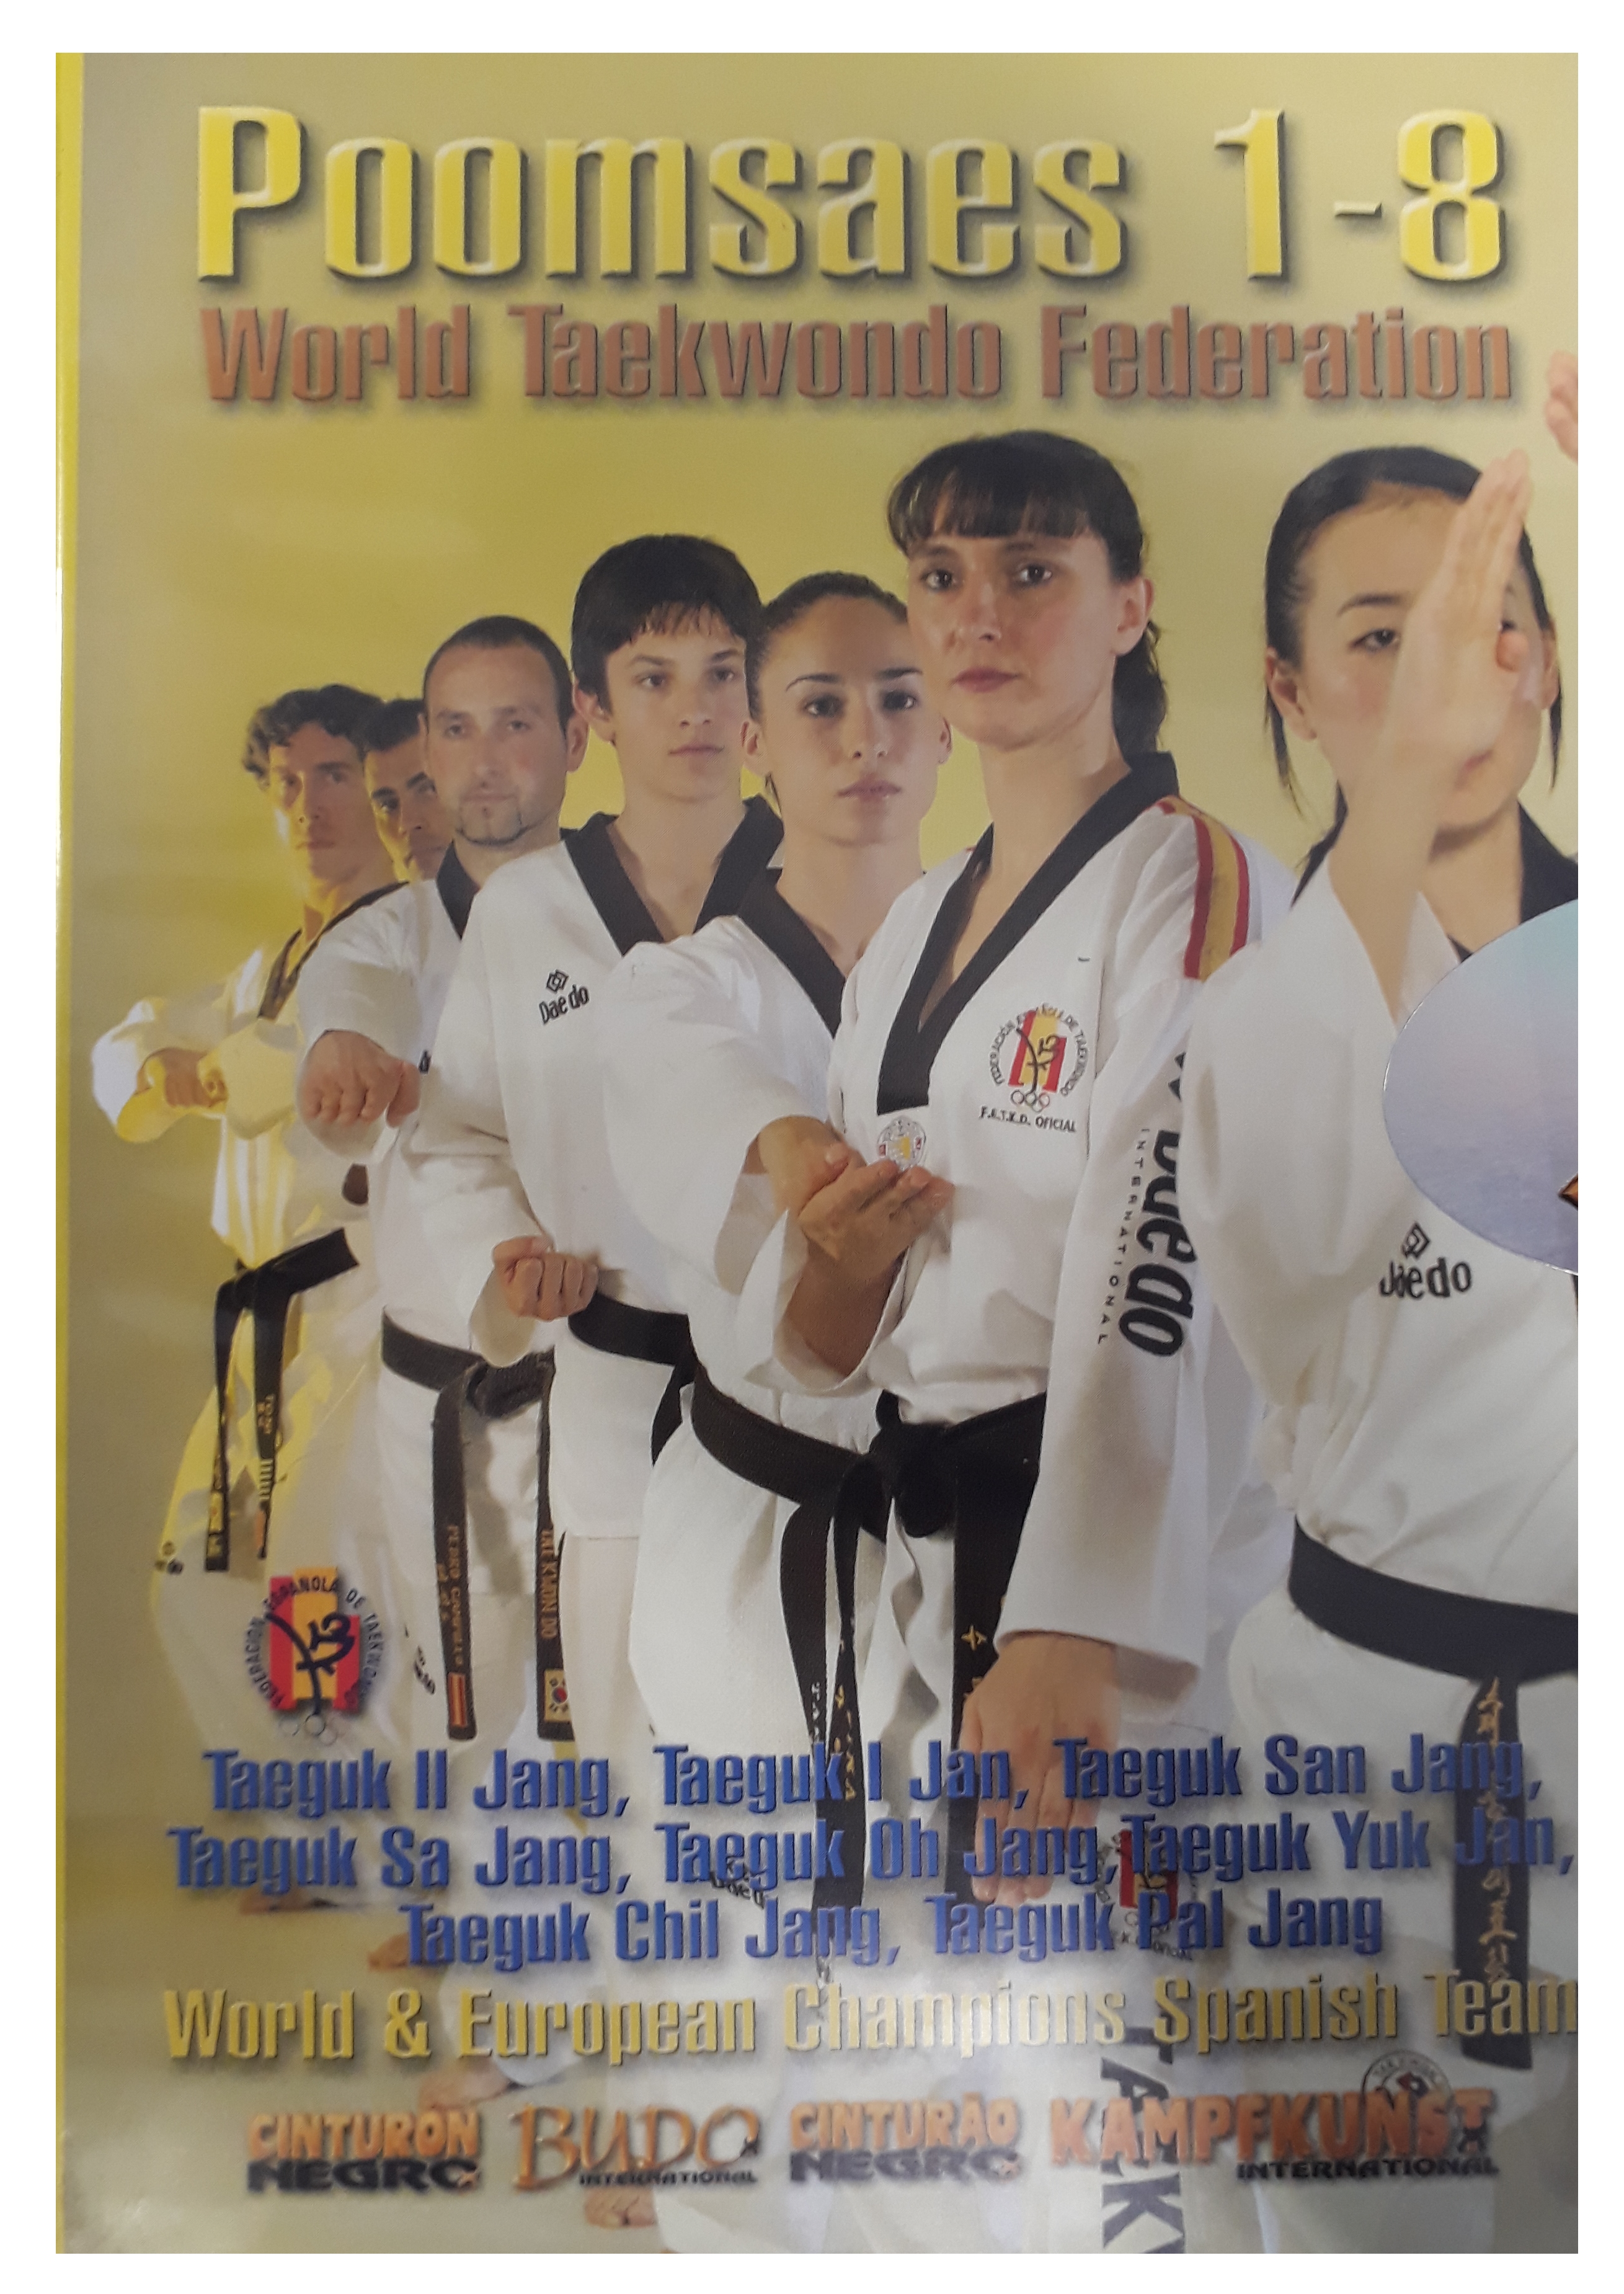 DVD World Taekwondo Federation: Poomsaes 1 - 8